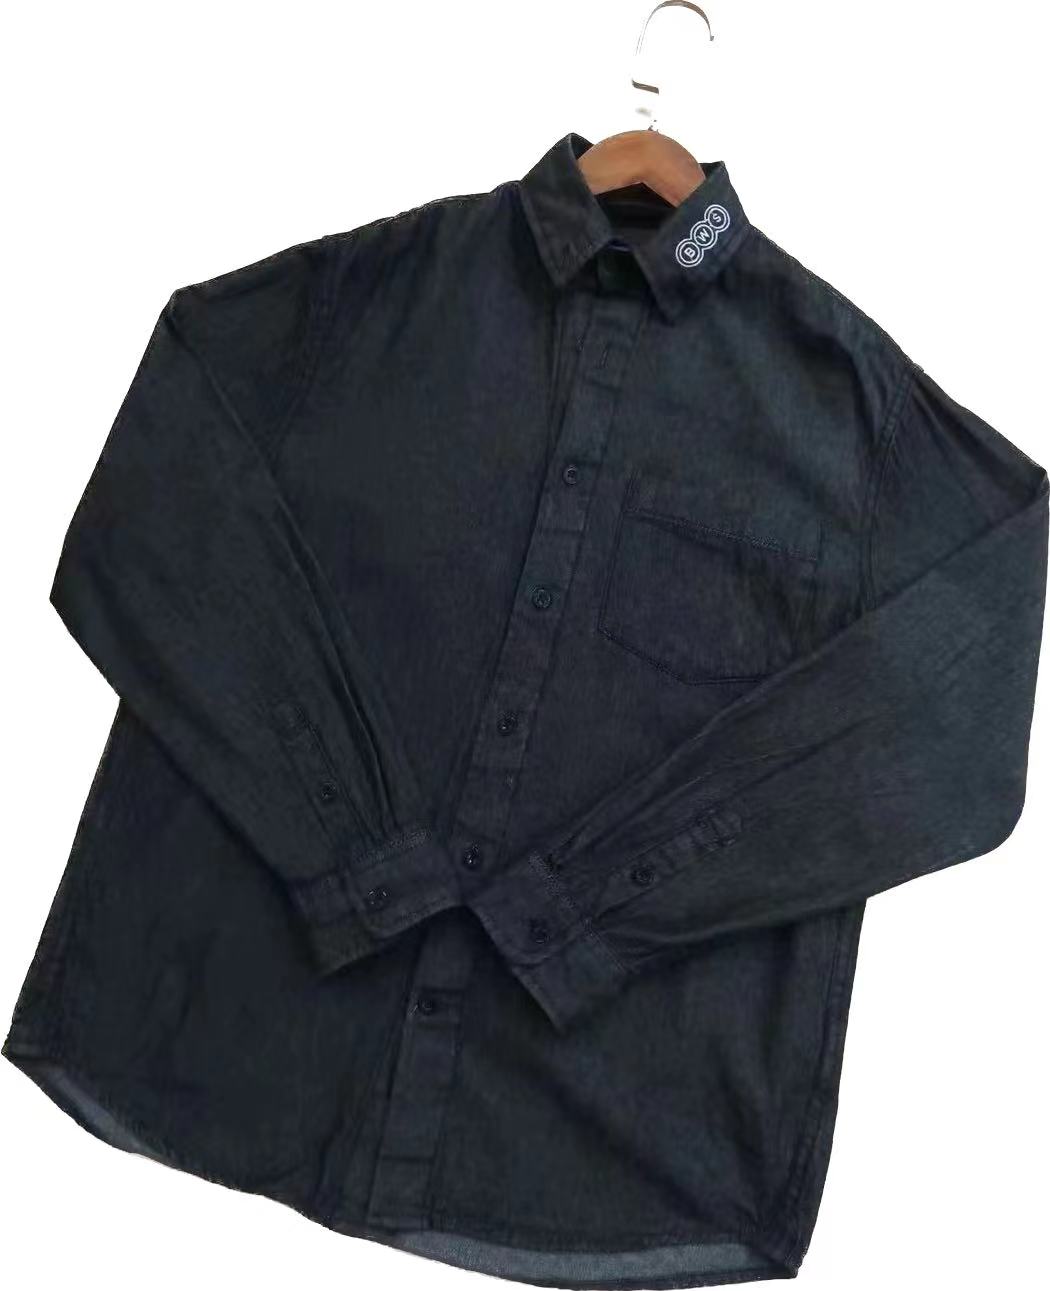 Распродажа мужских и женских джинсовых рубашек Stockpapa